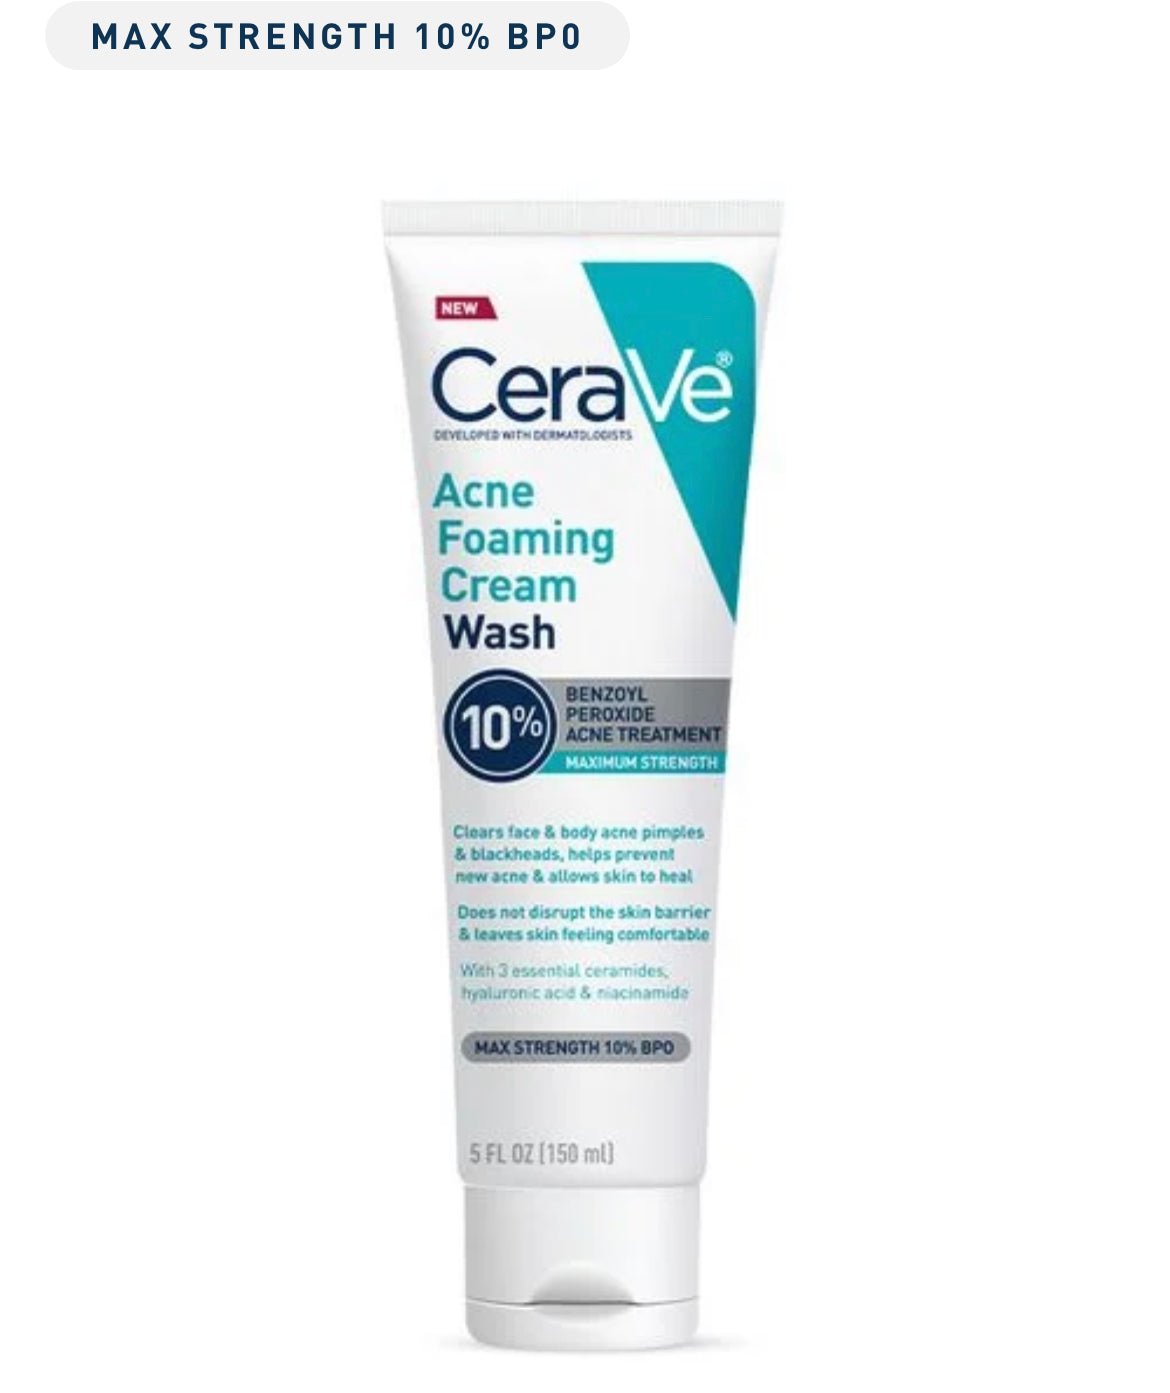 CeraVe Acne Foaming Cream Wash - Seraphim Beauty